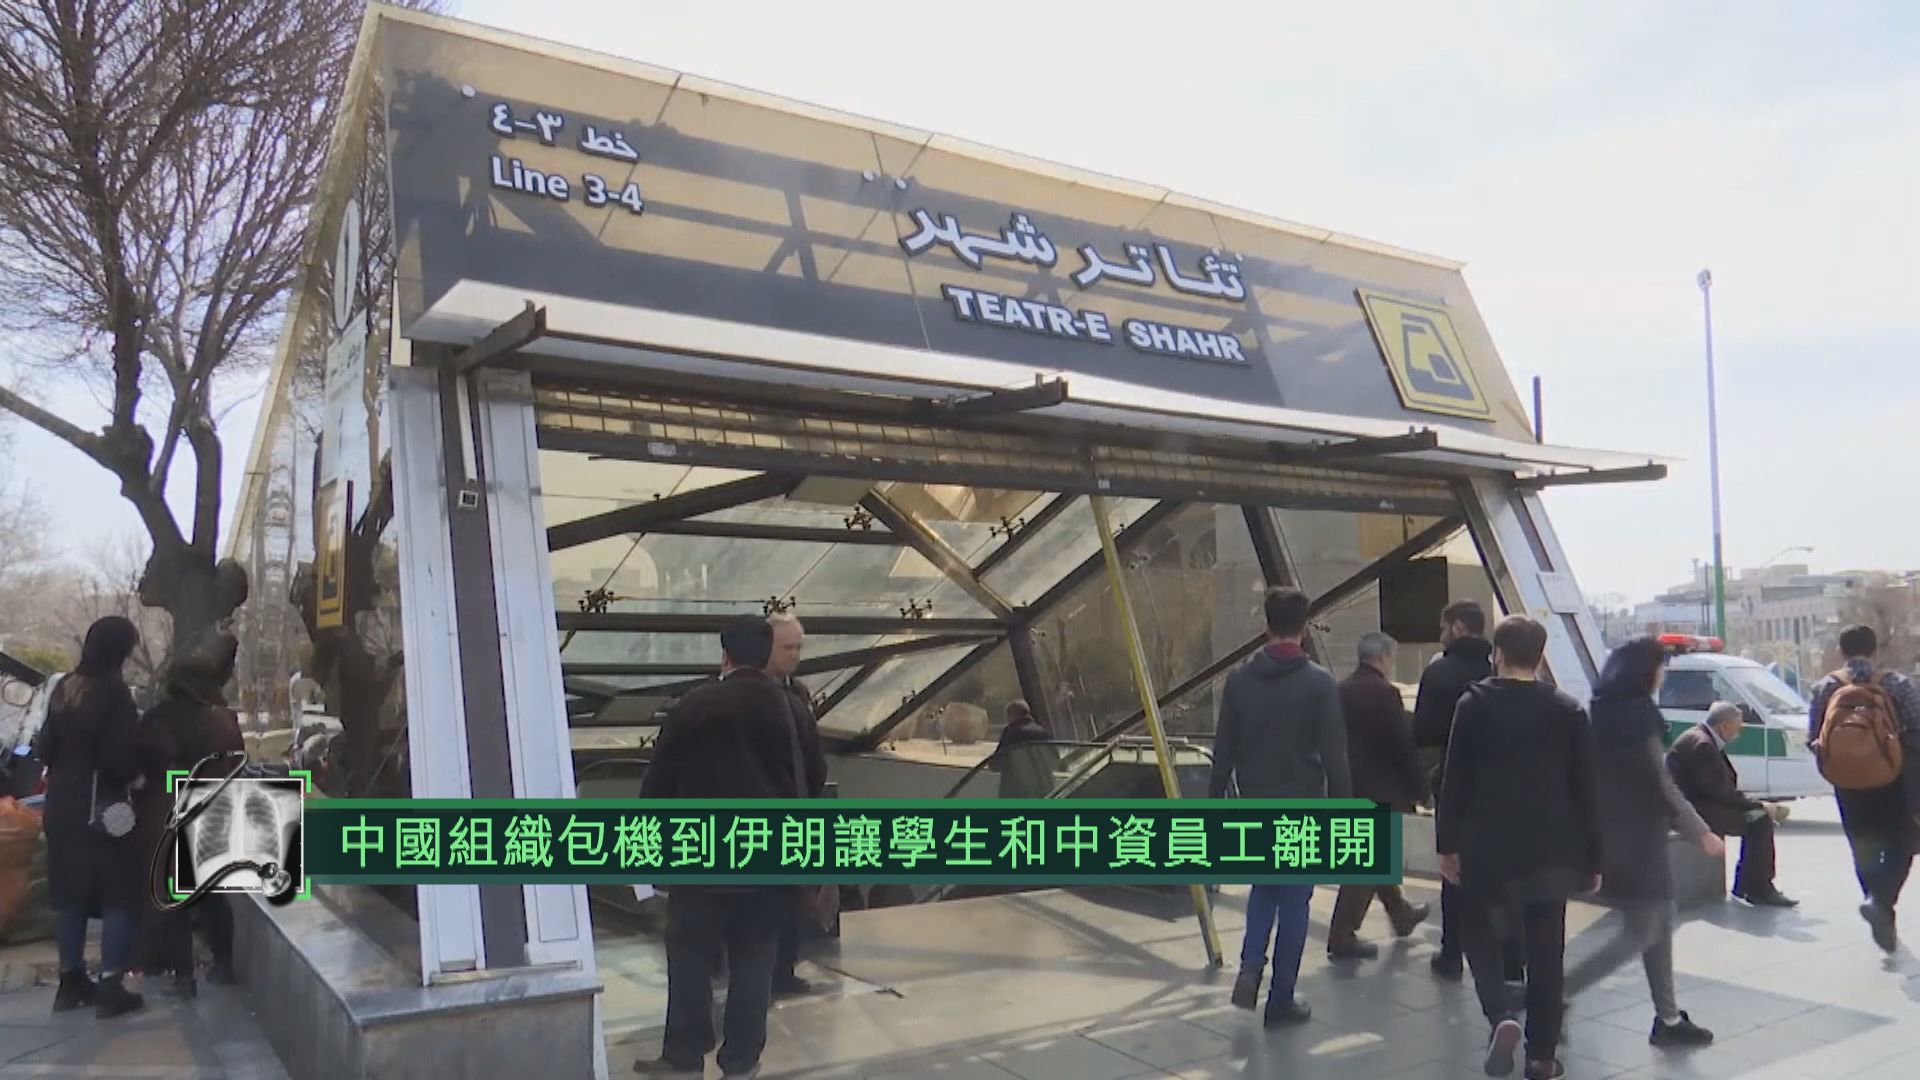 中國組織包機到伊朗讓學生和中資員工離開